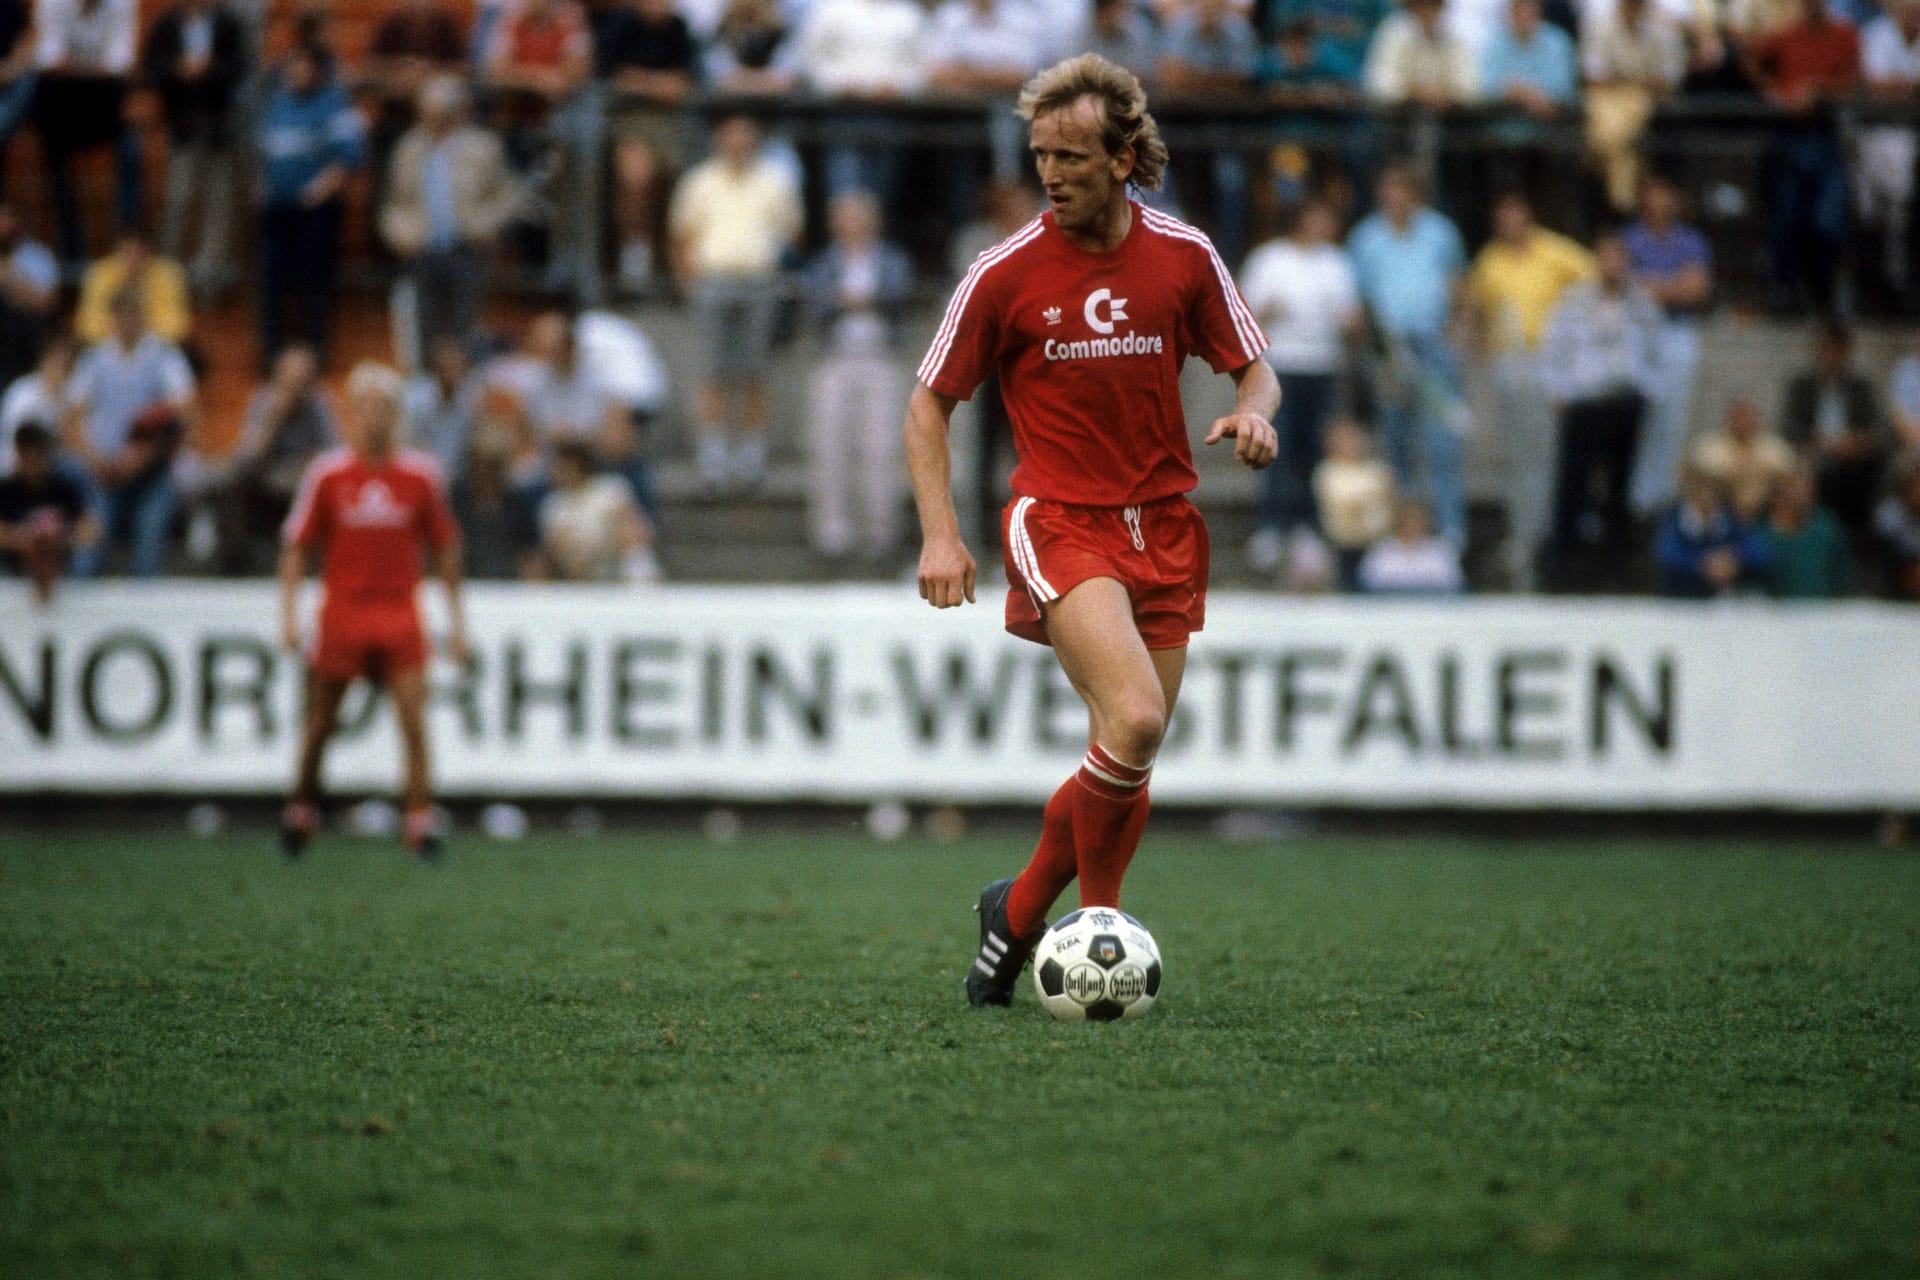 1986 folgte er dem Ruf des FC Bayern. Die Münchner überwiesen seinerzeit 2 Millionen D-Mark an den FCK. Mit den Bayern wurde er einmal Meister (1987) und erreichte im selben Jahr das Endspiel im Europapokal der Landesmeister (1:2 gegen Porto).